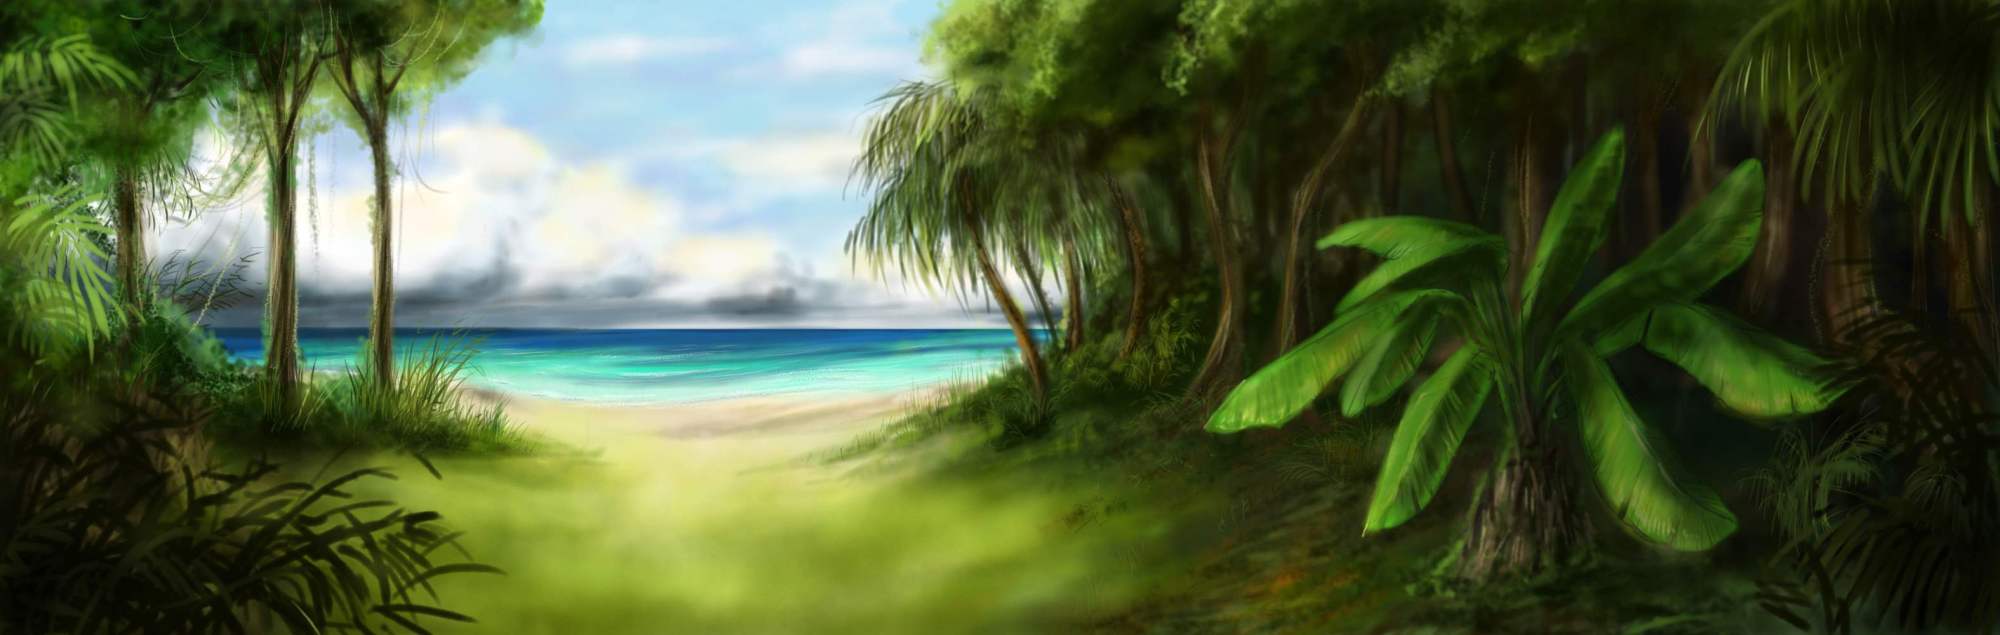 Background Jungle Island By 13Mirror On DeviantArt